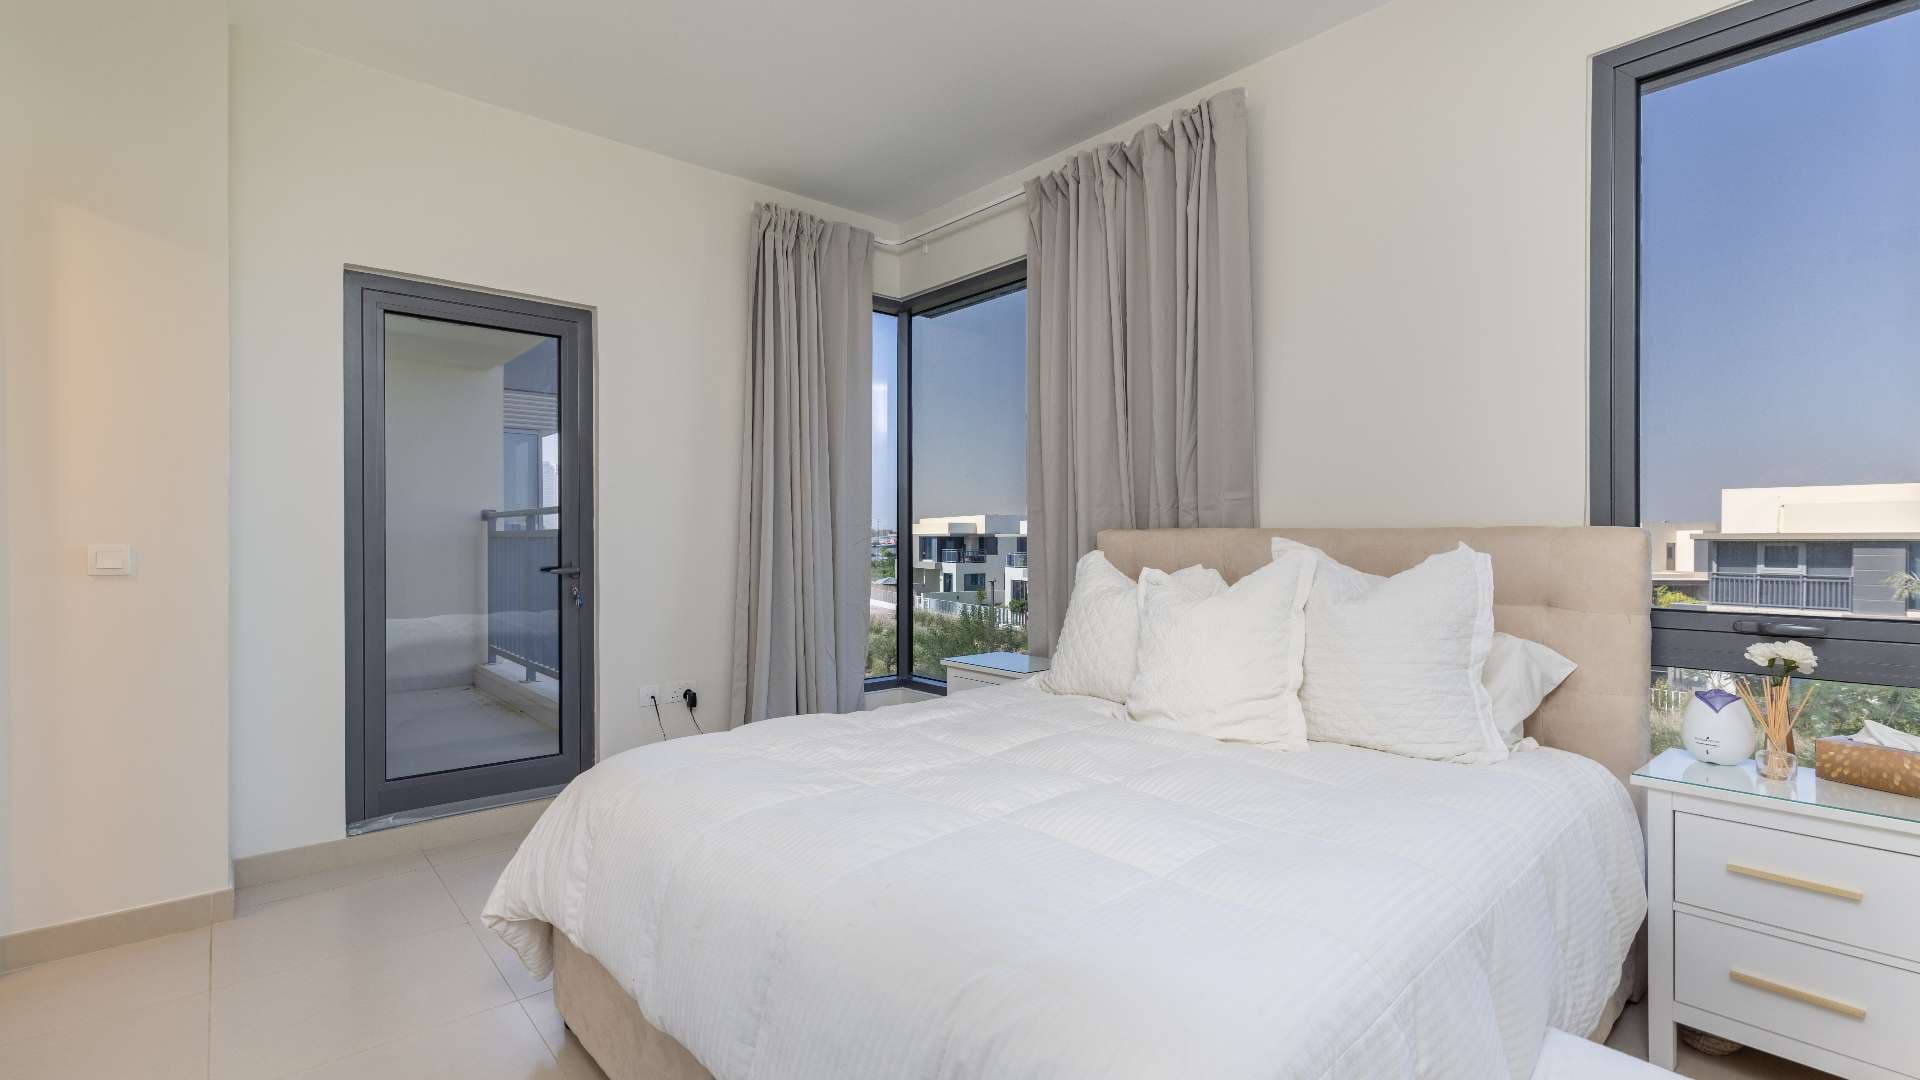 4 Bedroom Townhouse For Rent Maple At Dubai Hills Estate Lp09278 17cc8031d1b27d00.jpg